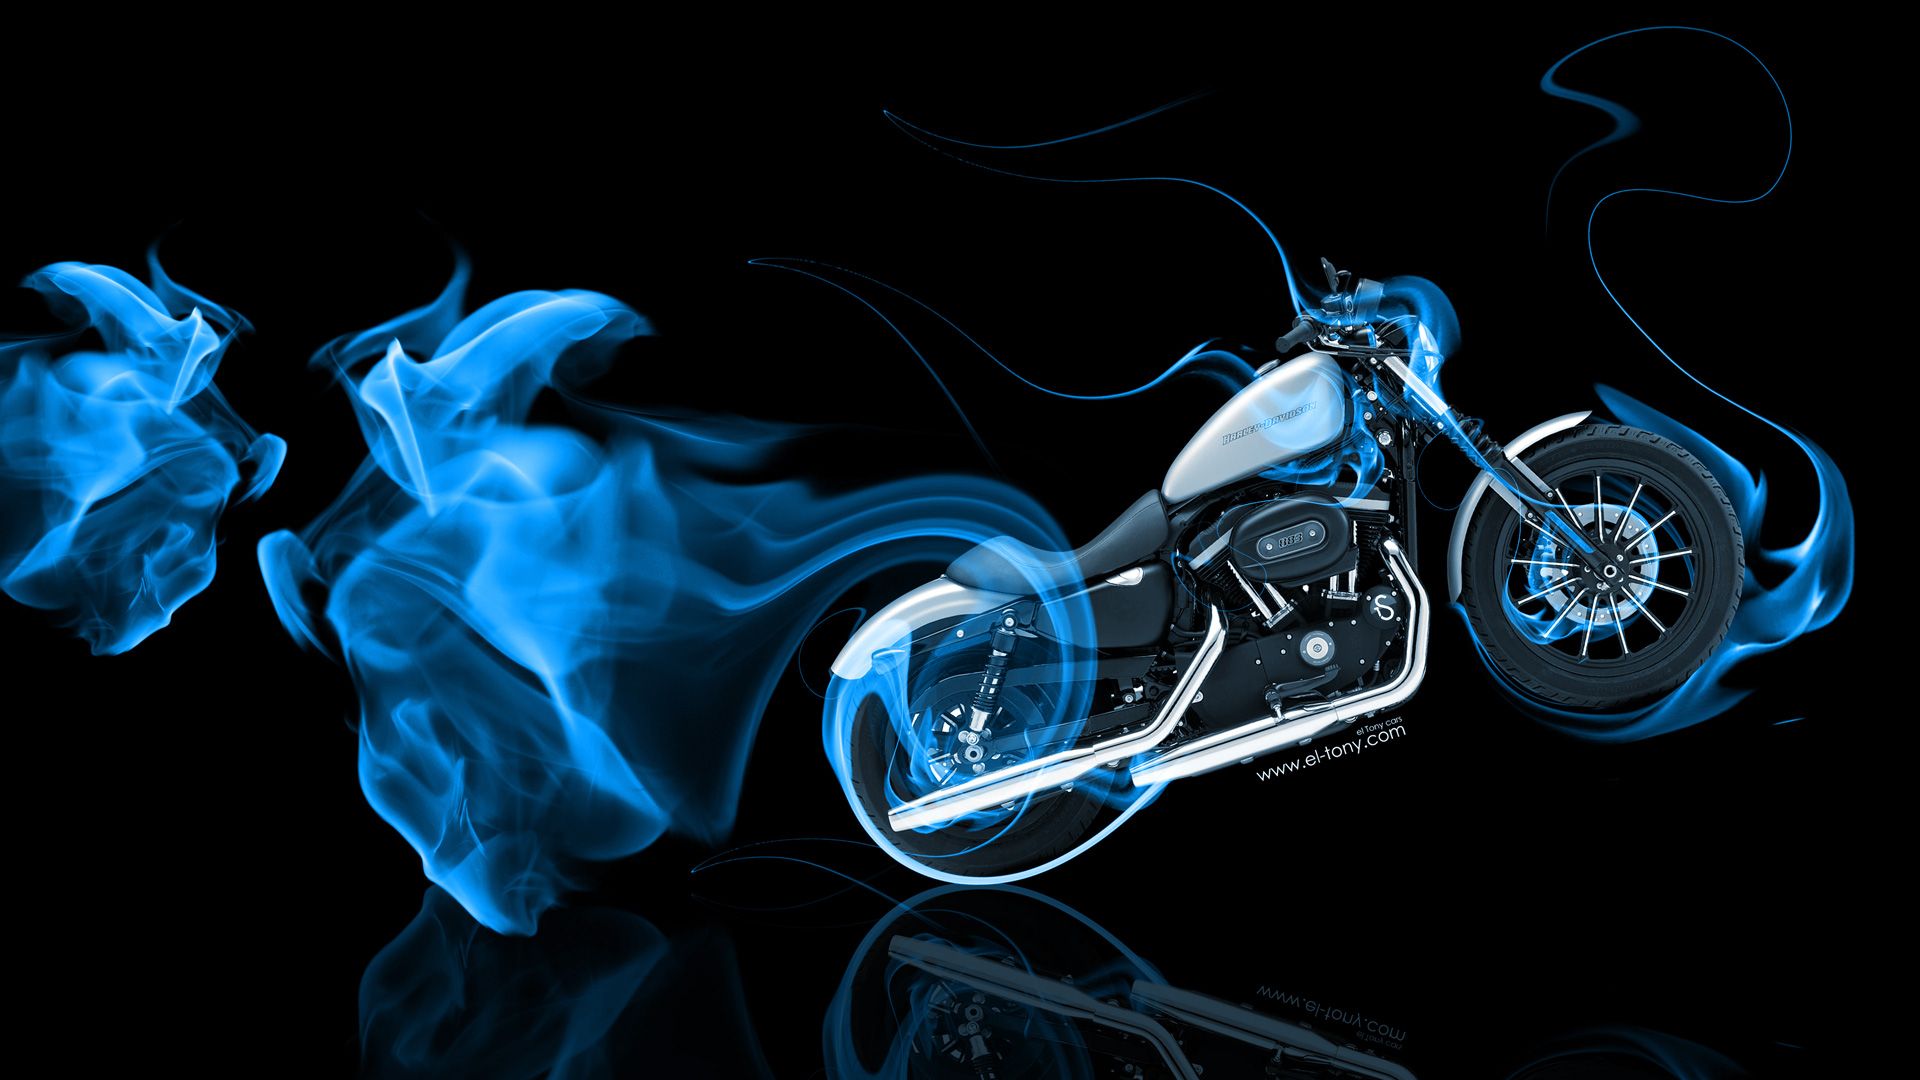 Moto Gun Super Fire Flame Abstract Bike 2016 Wallpaper 4k El Tony